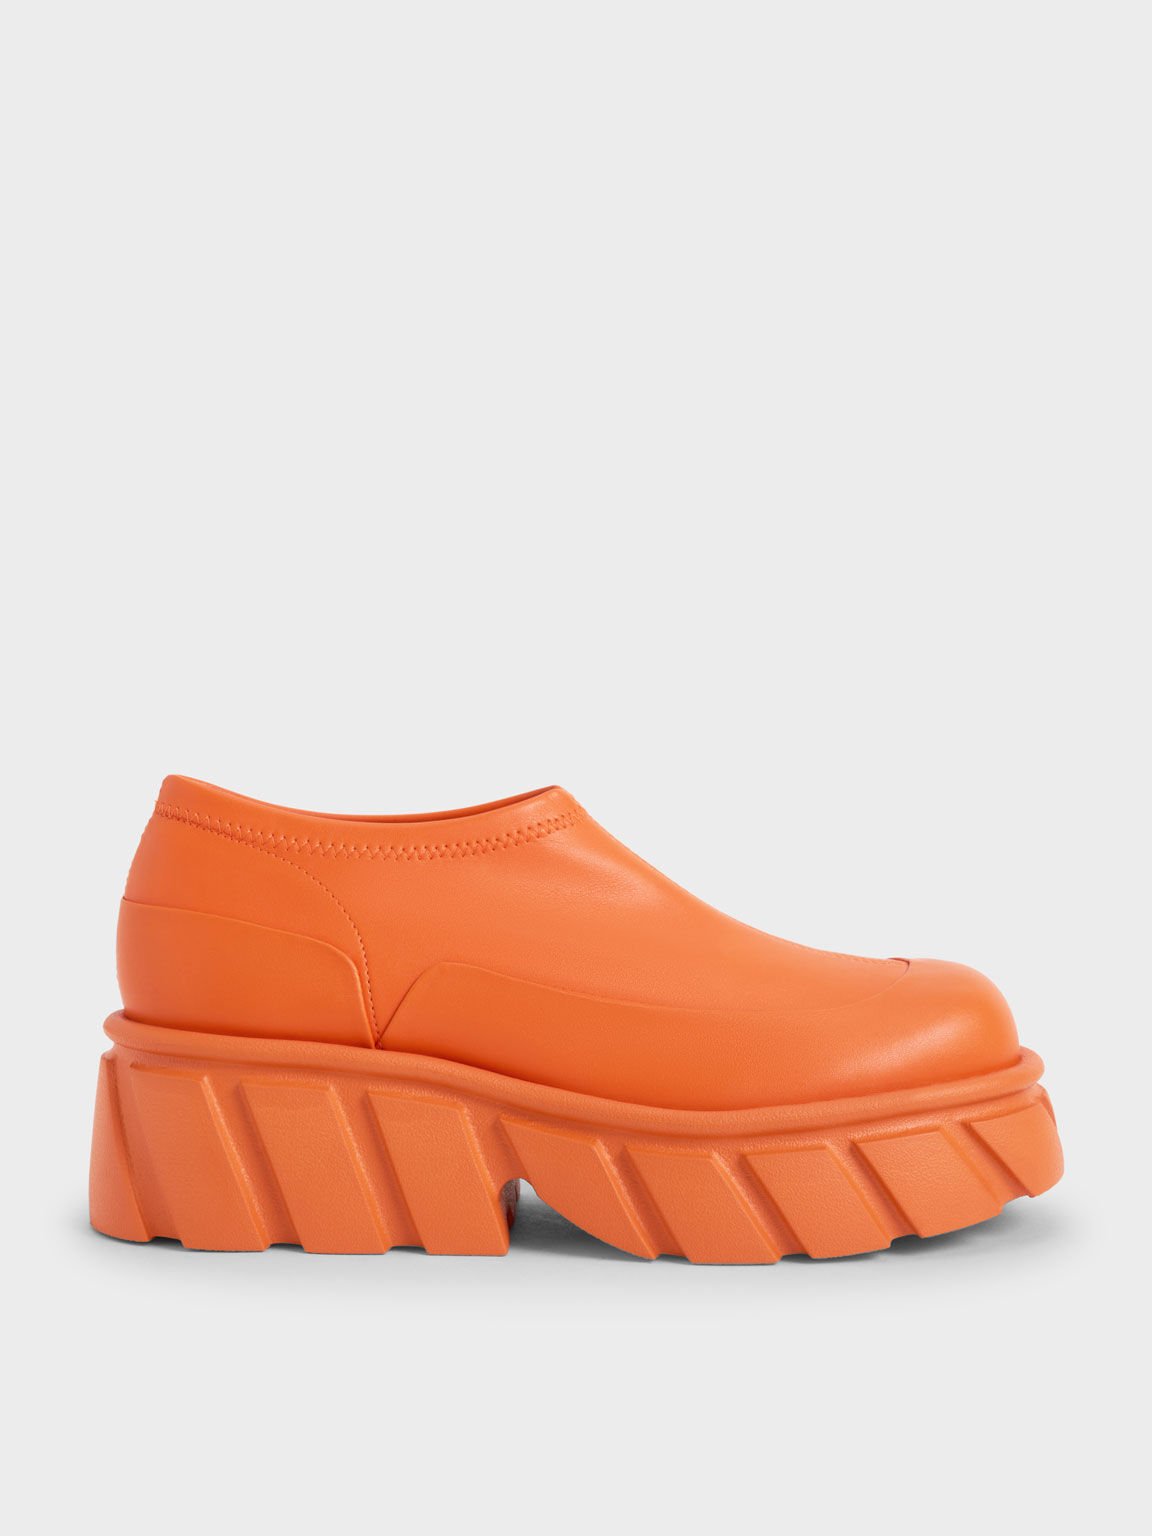 Aberdeen Slip-On Sneakers, Orange, hi-res